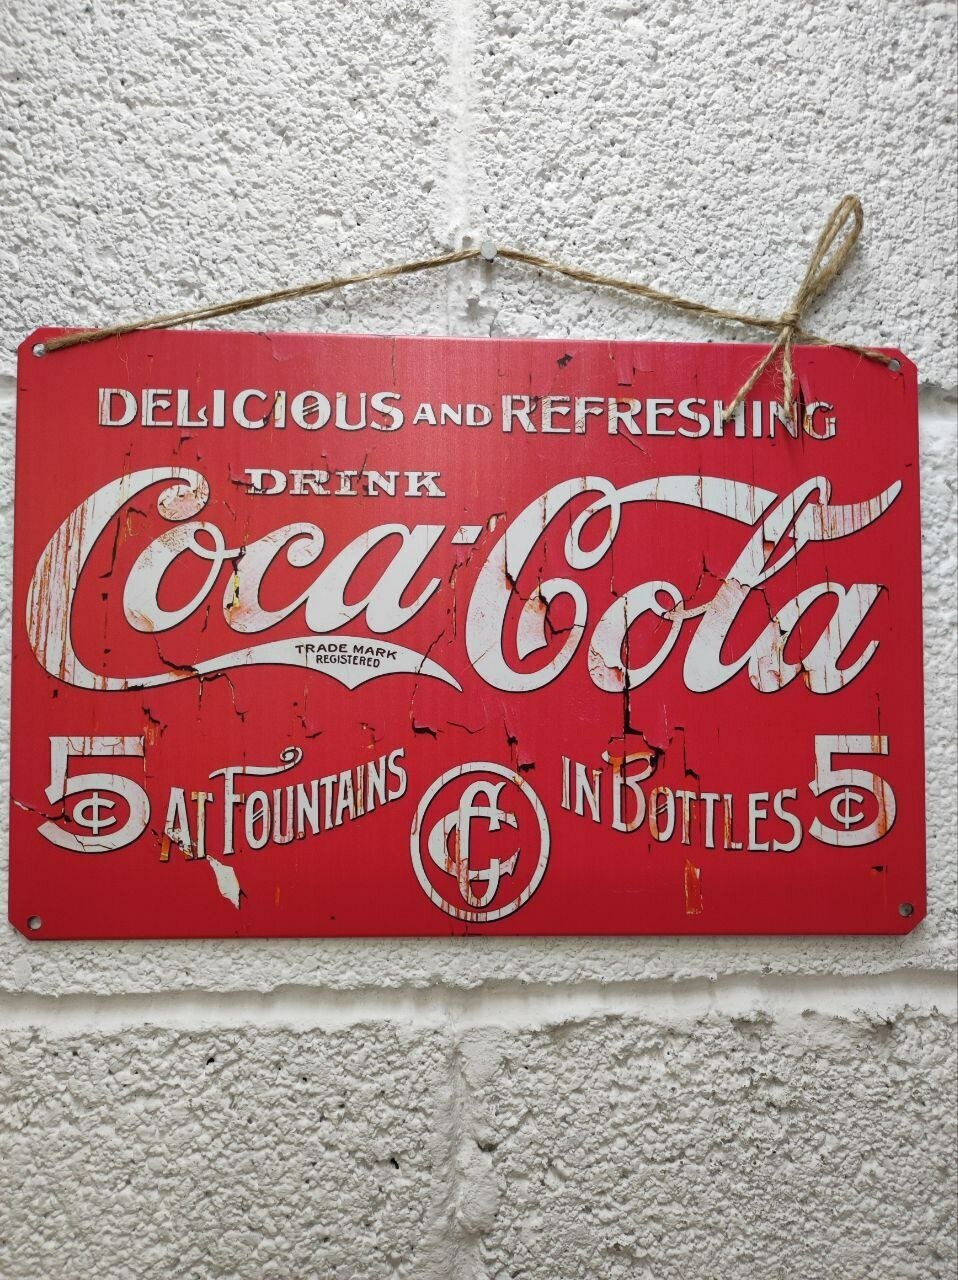 Кока-кола ретро постер табличка металлическая 20 на 30 см, шнур-подвес в подарок